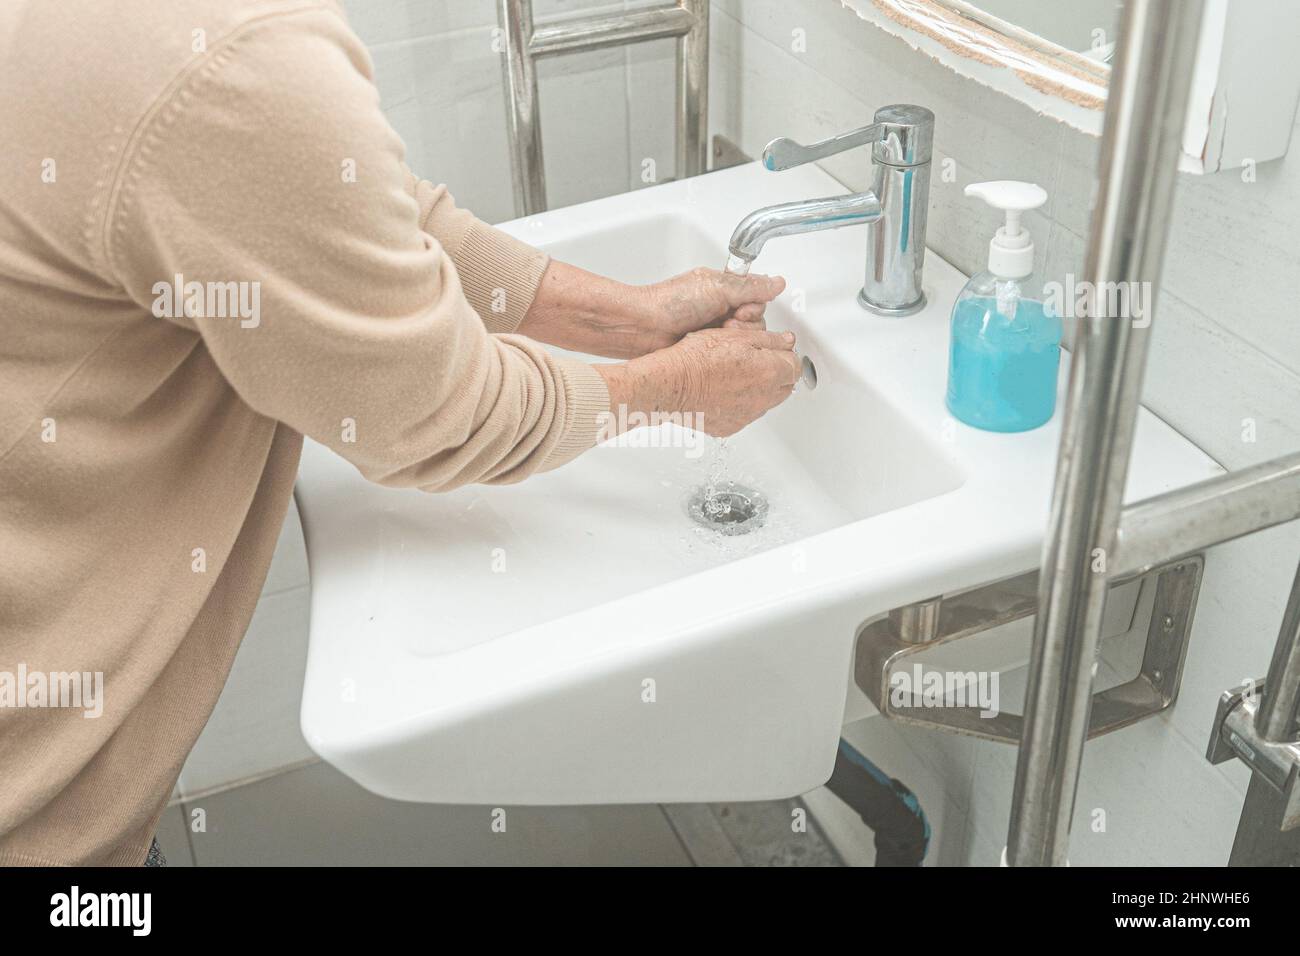 Asia lavarse las manos con jabón líquido y agua limpia para proteger la seguridad de la infección y matar el virus Novel Coronavirus Covid-19, bacterias y gérmenes. Foto de stock